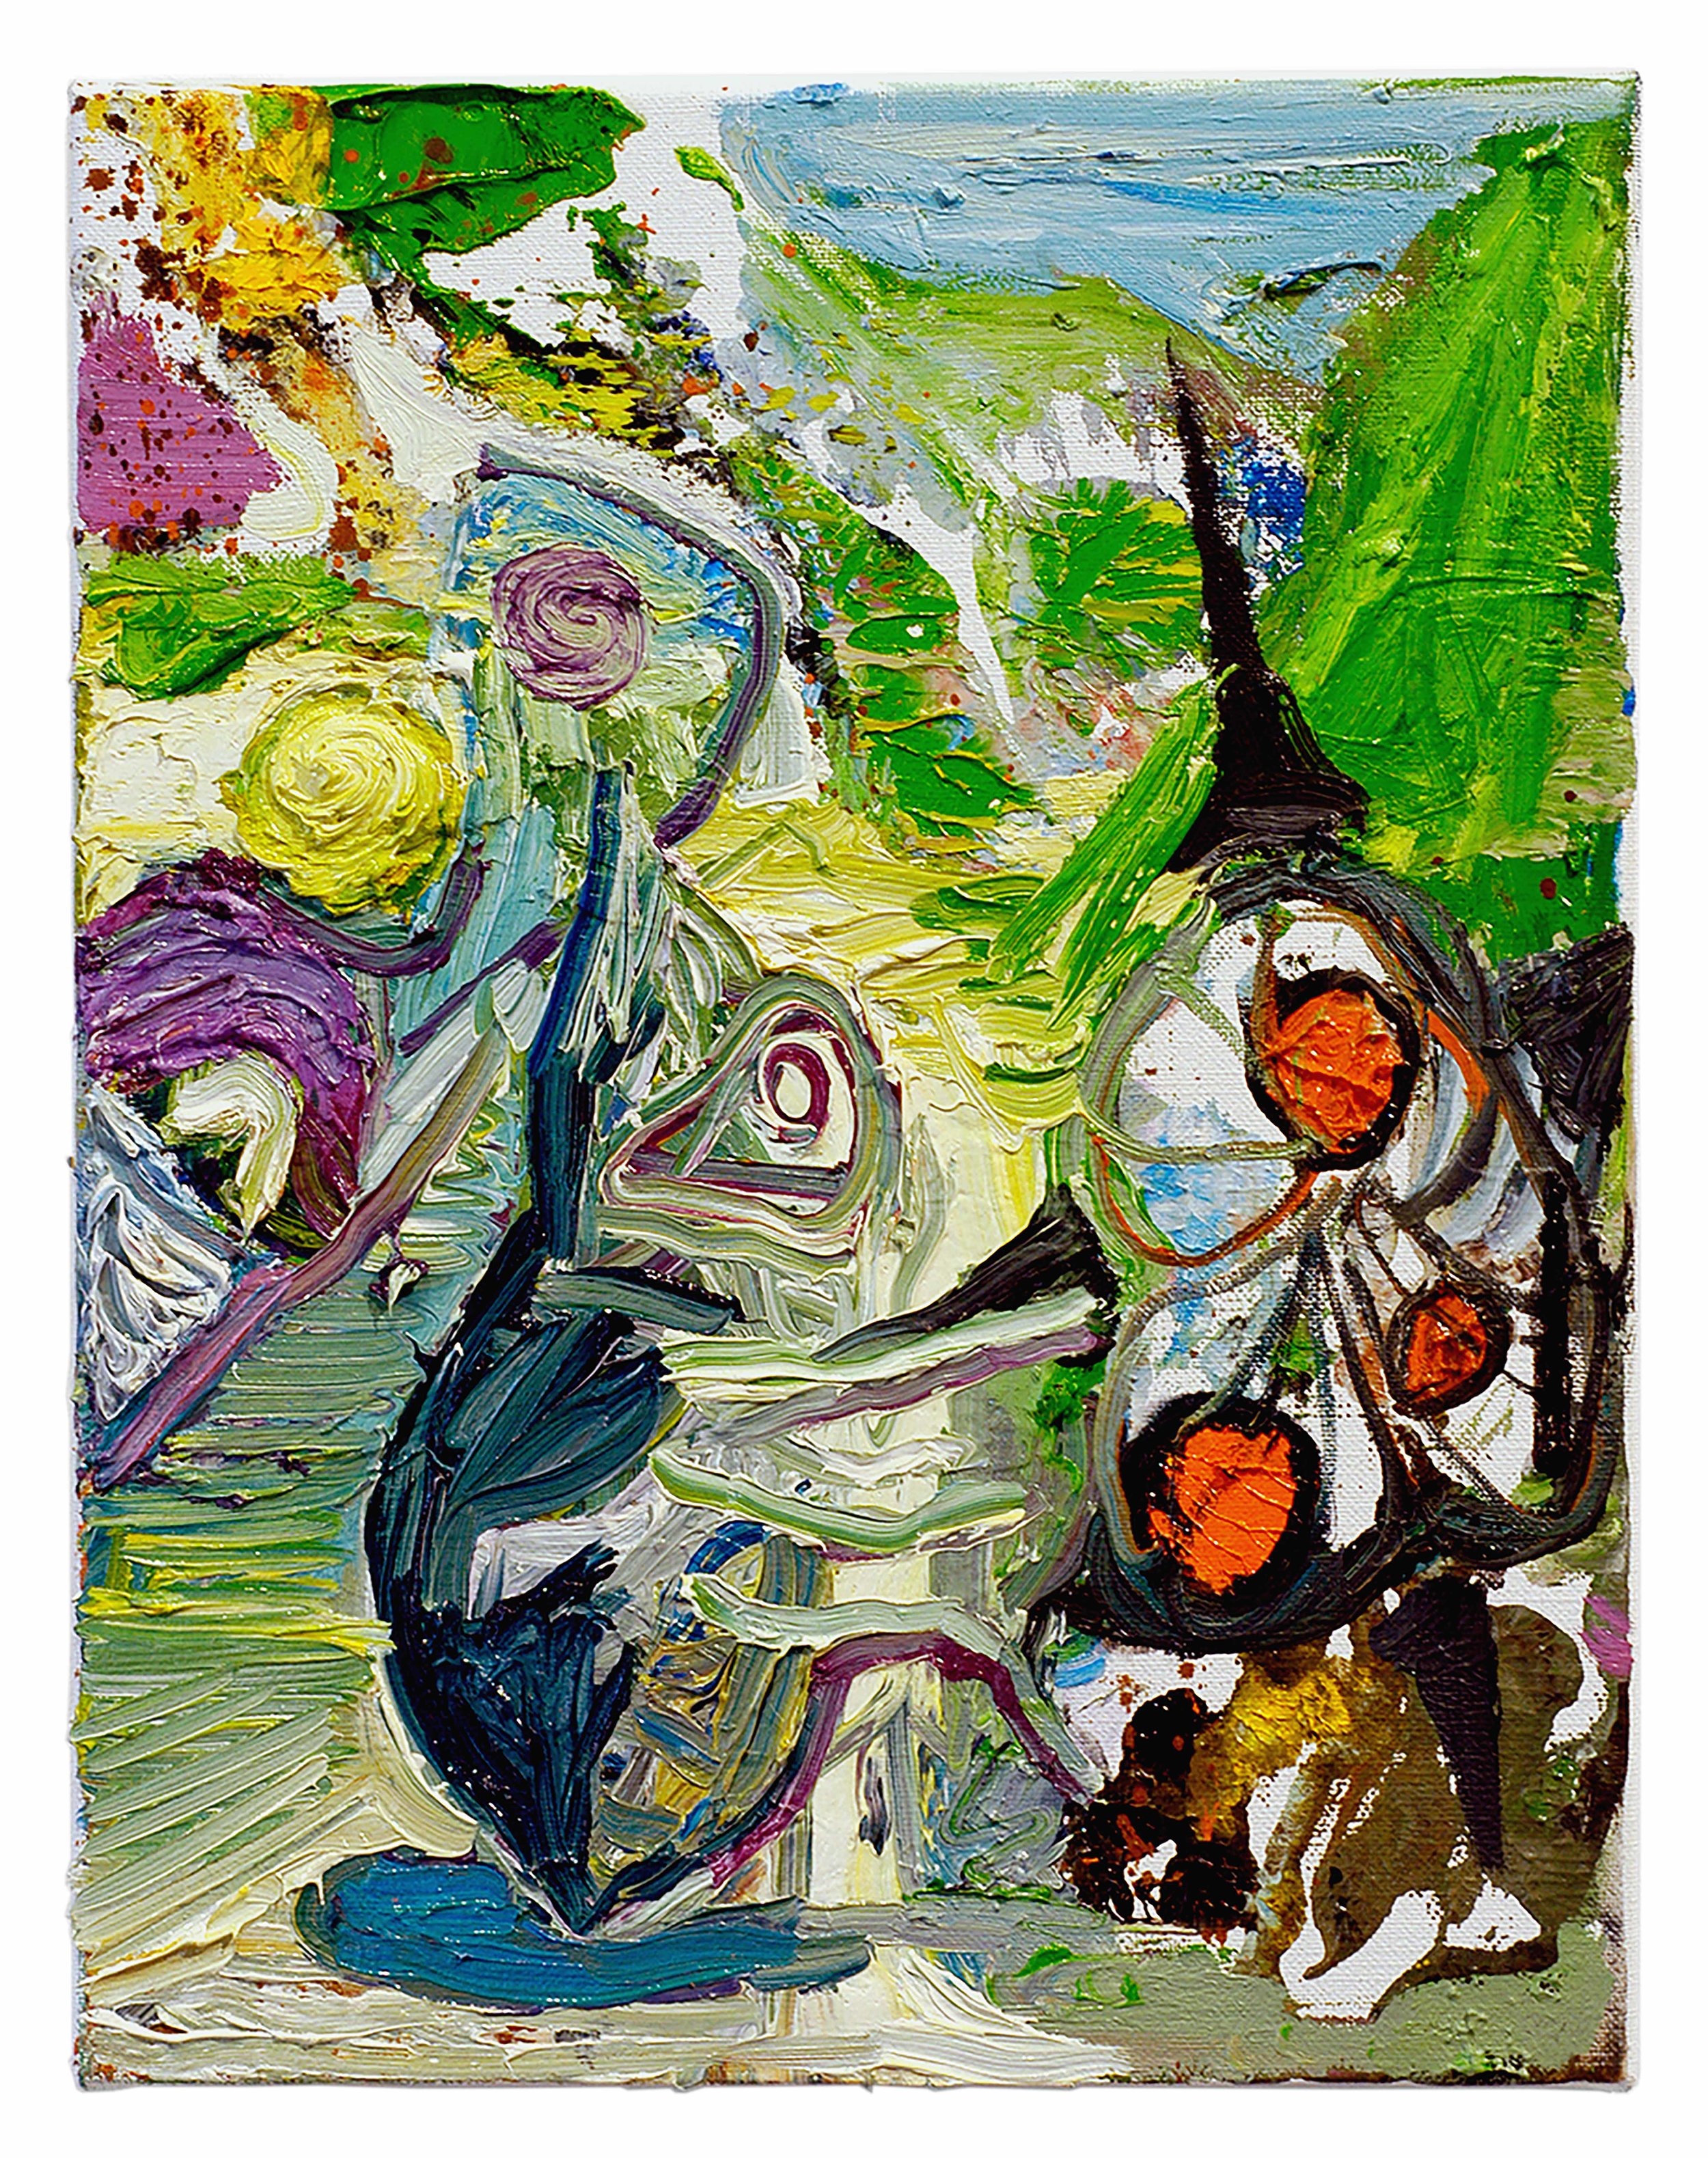  Drew Beattie  Garden Path &nbsp; 2005 oil on canvas 14 x 11 inches 